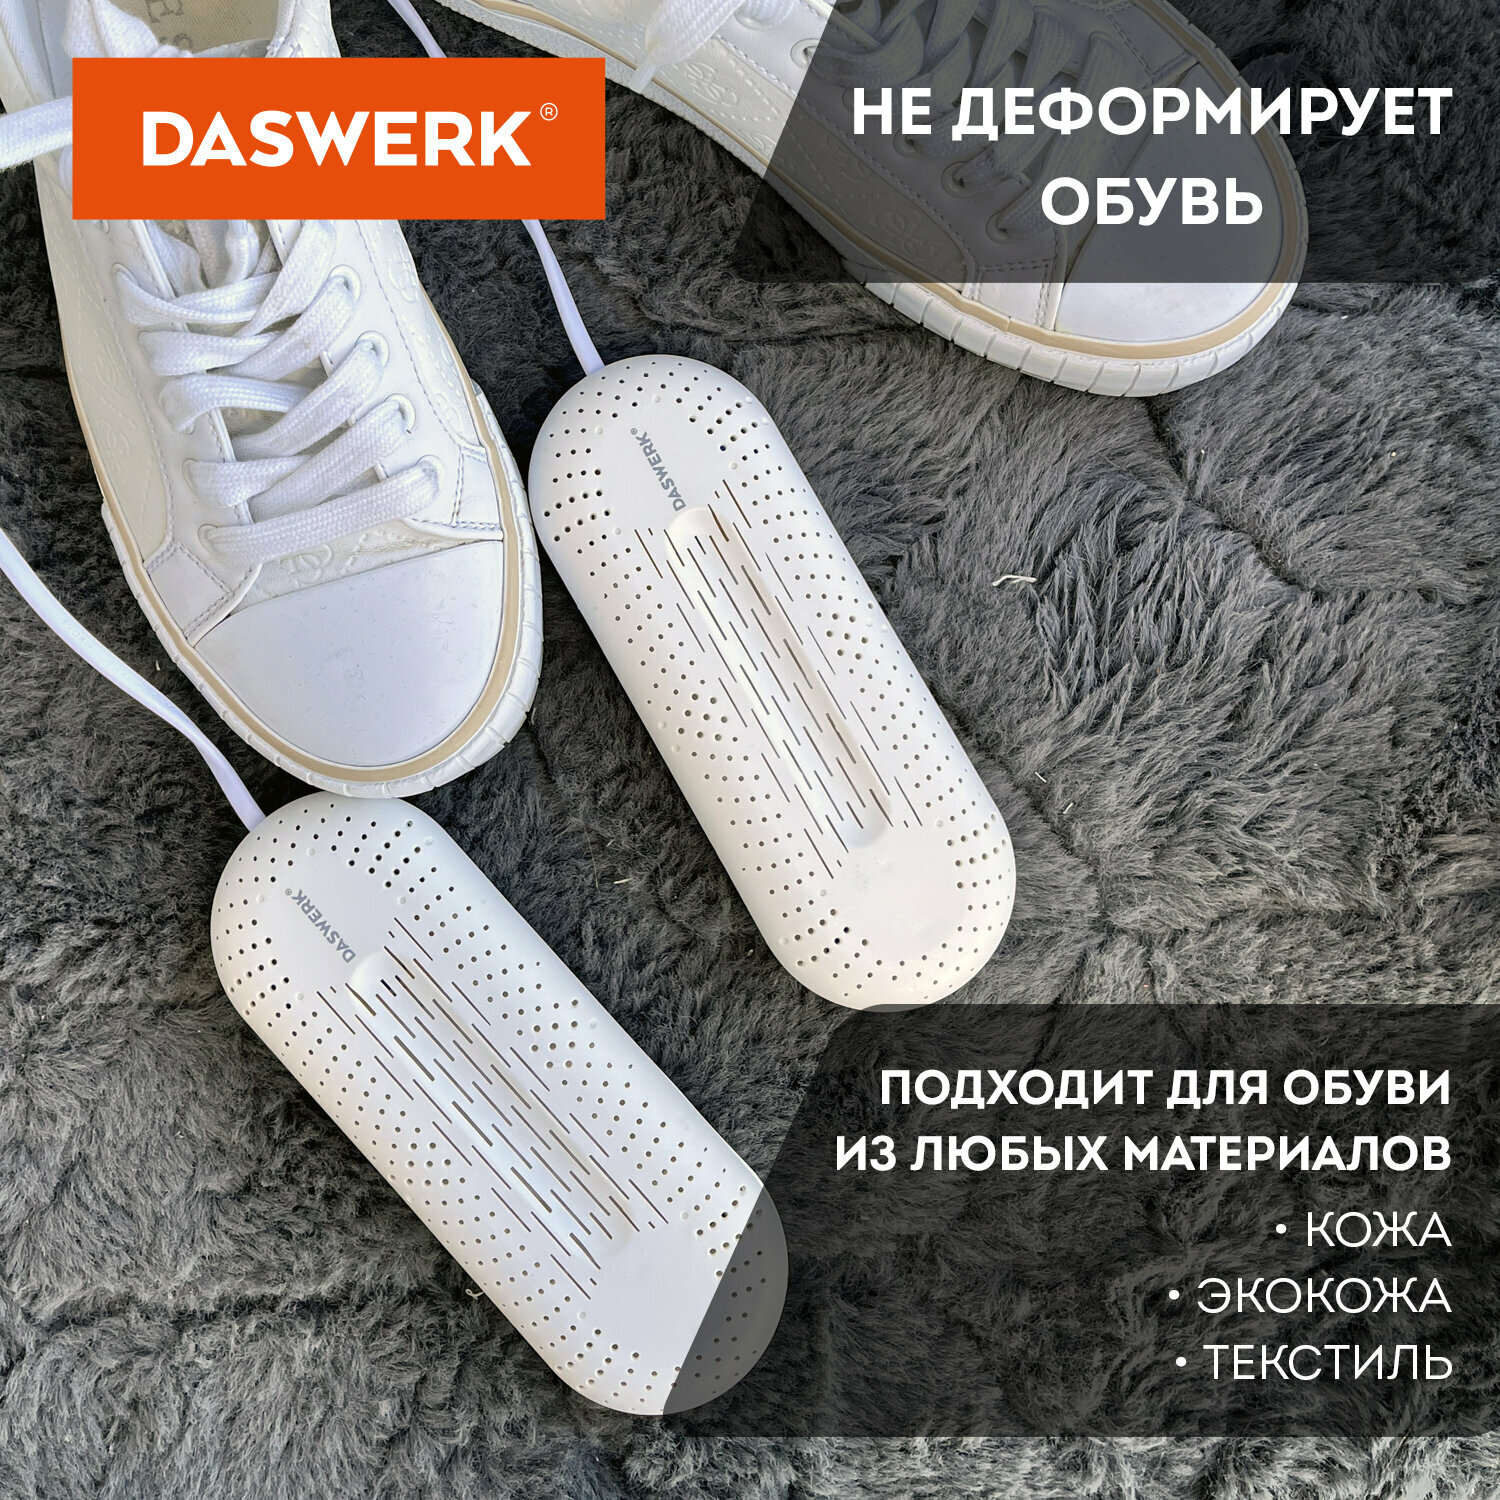 Cушилка для обуви, электрическая (сушка, электросушилка) от запаха с подсветкой, 20 Вт, Daswerk, Sd2, 456195 - фотография № 6